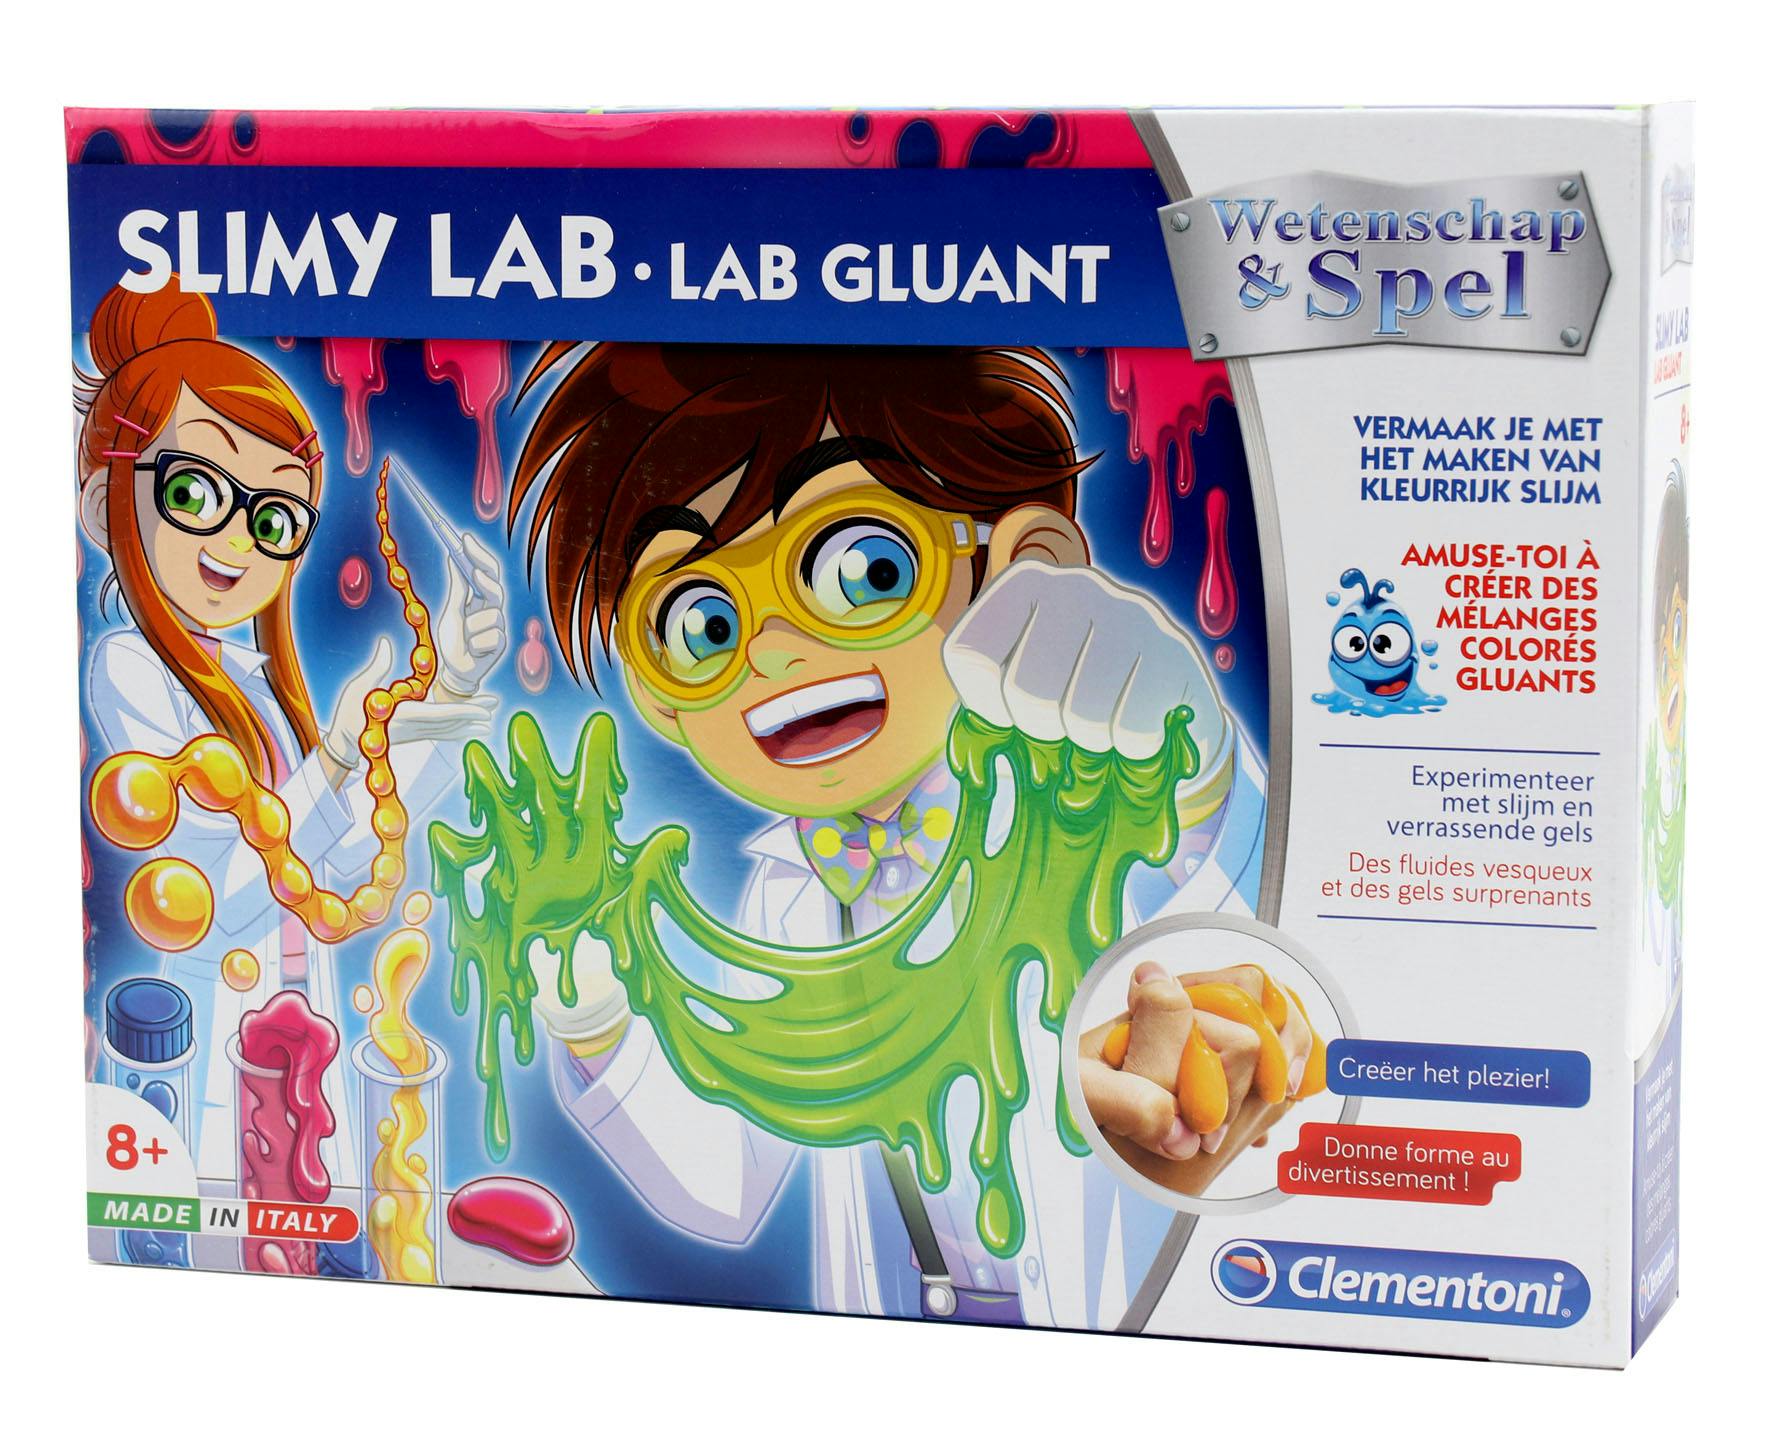 Clementoni - Science et jeu laboratoire, Les apprentis scientifiques